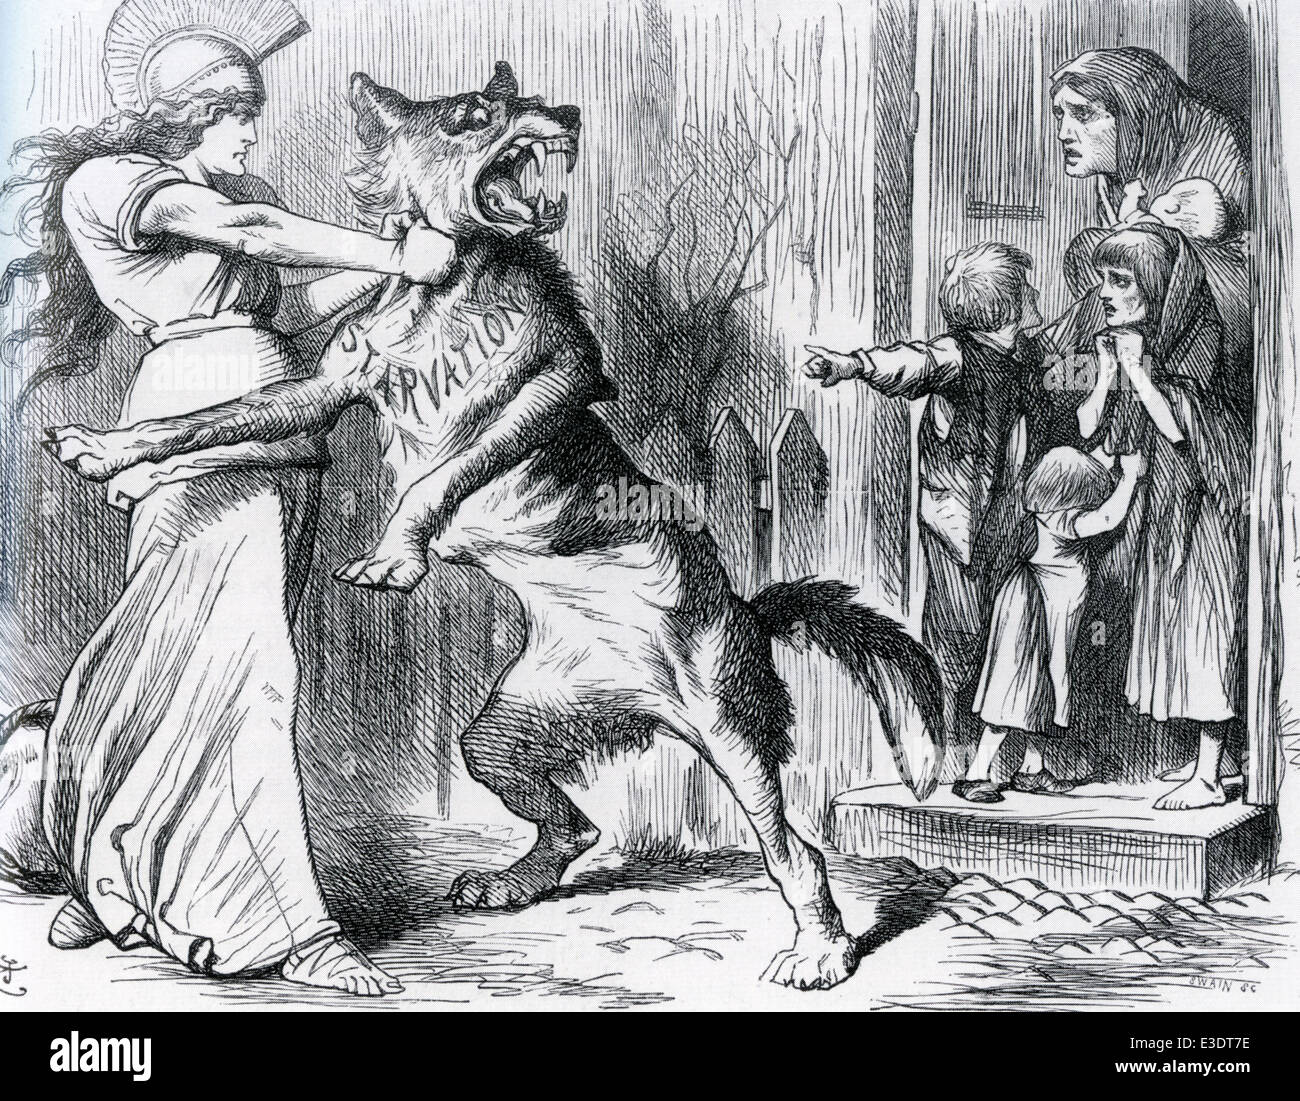 ERIN BRAVLEY TUSSELS CON IL LUPO DI FAME al soccorso dei poveri dell'Irlanda,cartoon di Tenniel dal punzone Gennaio 1879 Foto Stock